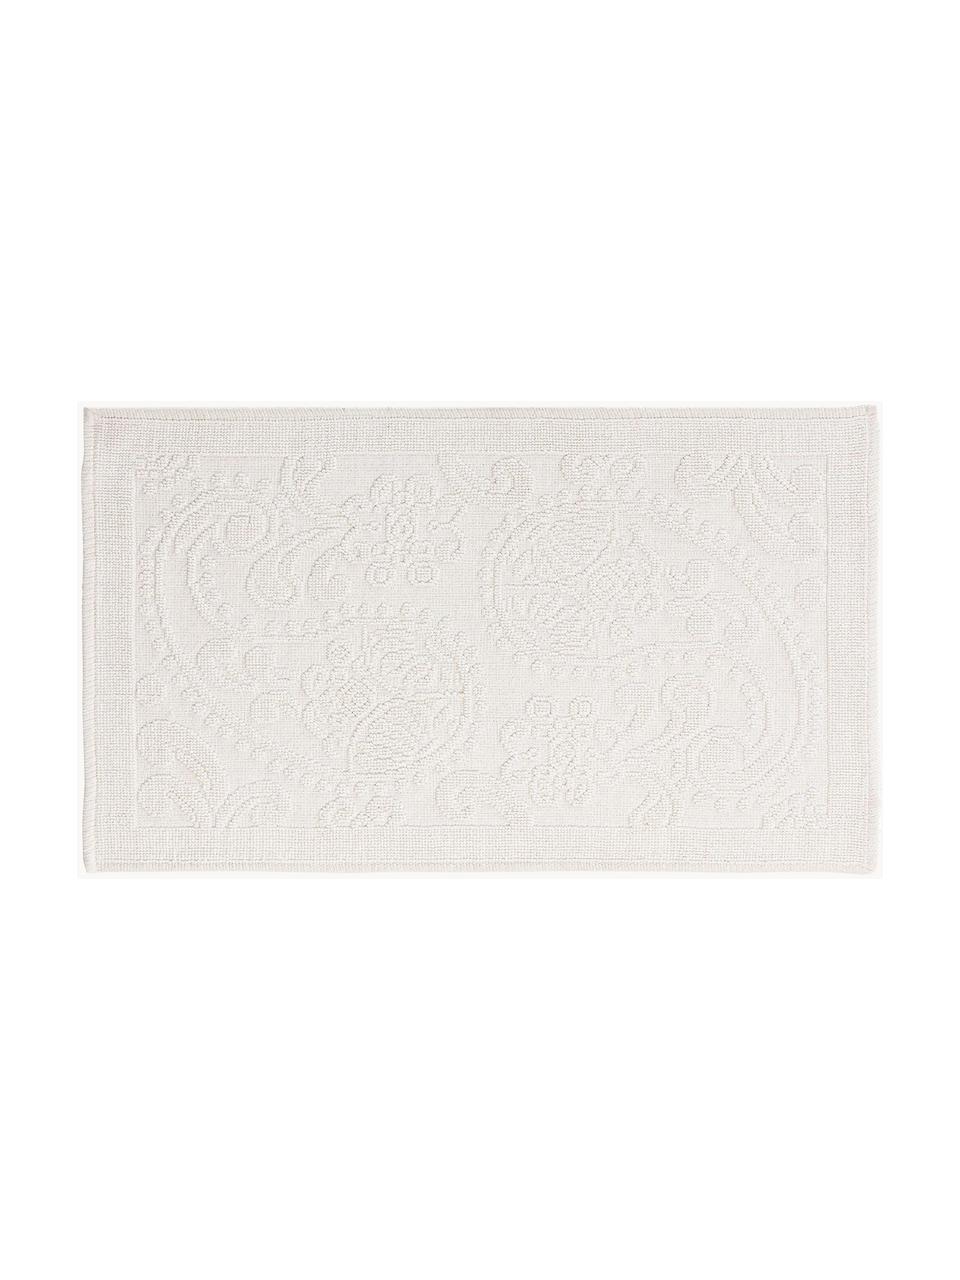 Koupelnový kobereček s  květinovým vzorem Kaya, 100% bavlna, Krémově bílá, Š 50 cm, D 80 cm